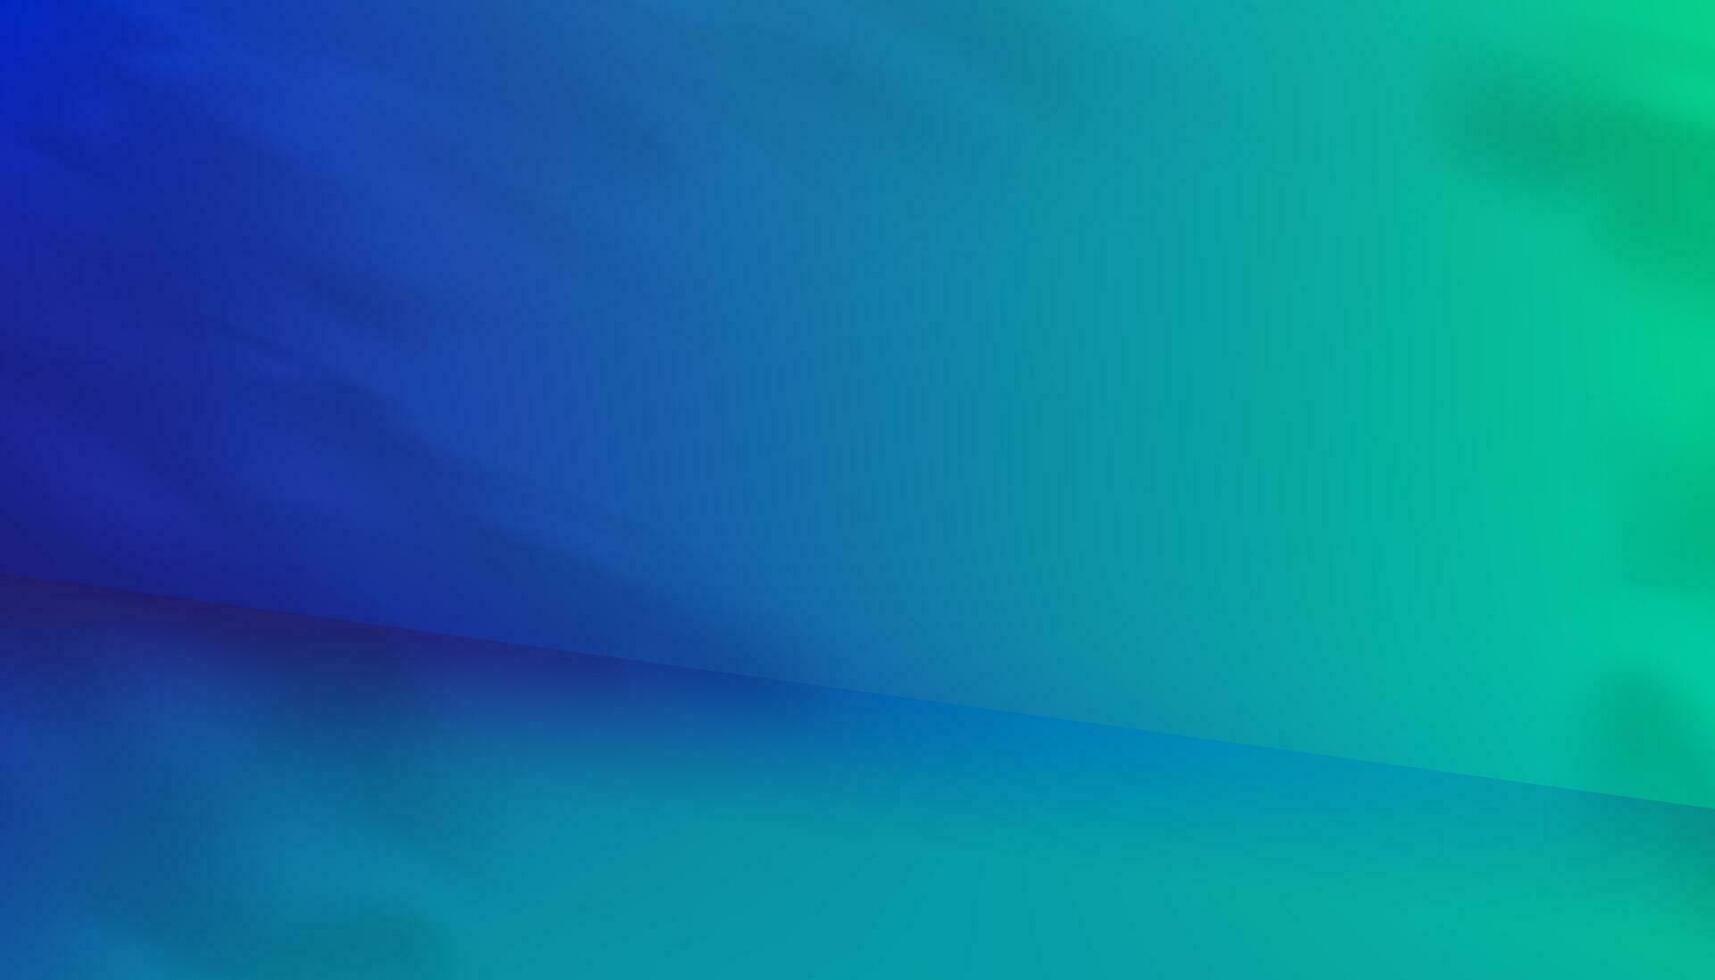 studio sfondo, prodotto Schermo podio con ombra le foglie su verde blu parete superficie.vettore fondale bandiera scena futuristico neon per futuro cyberspazio, pubblicità, tecnologia, cosmetici, moda, fantascienza vettore